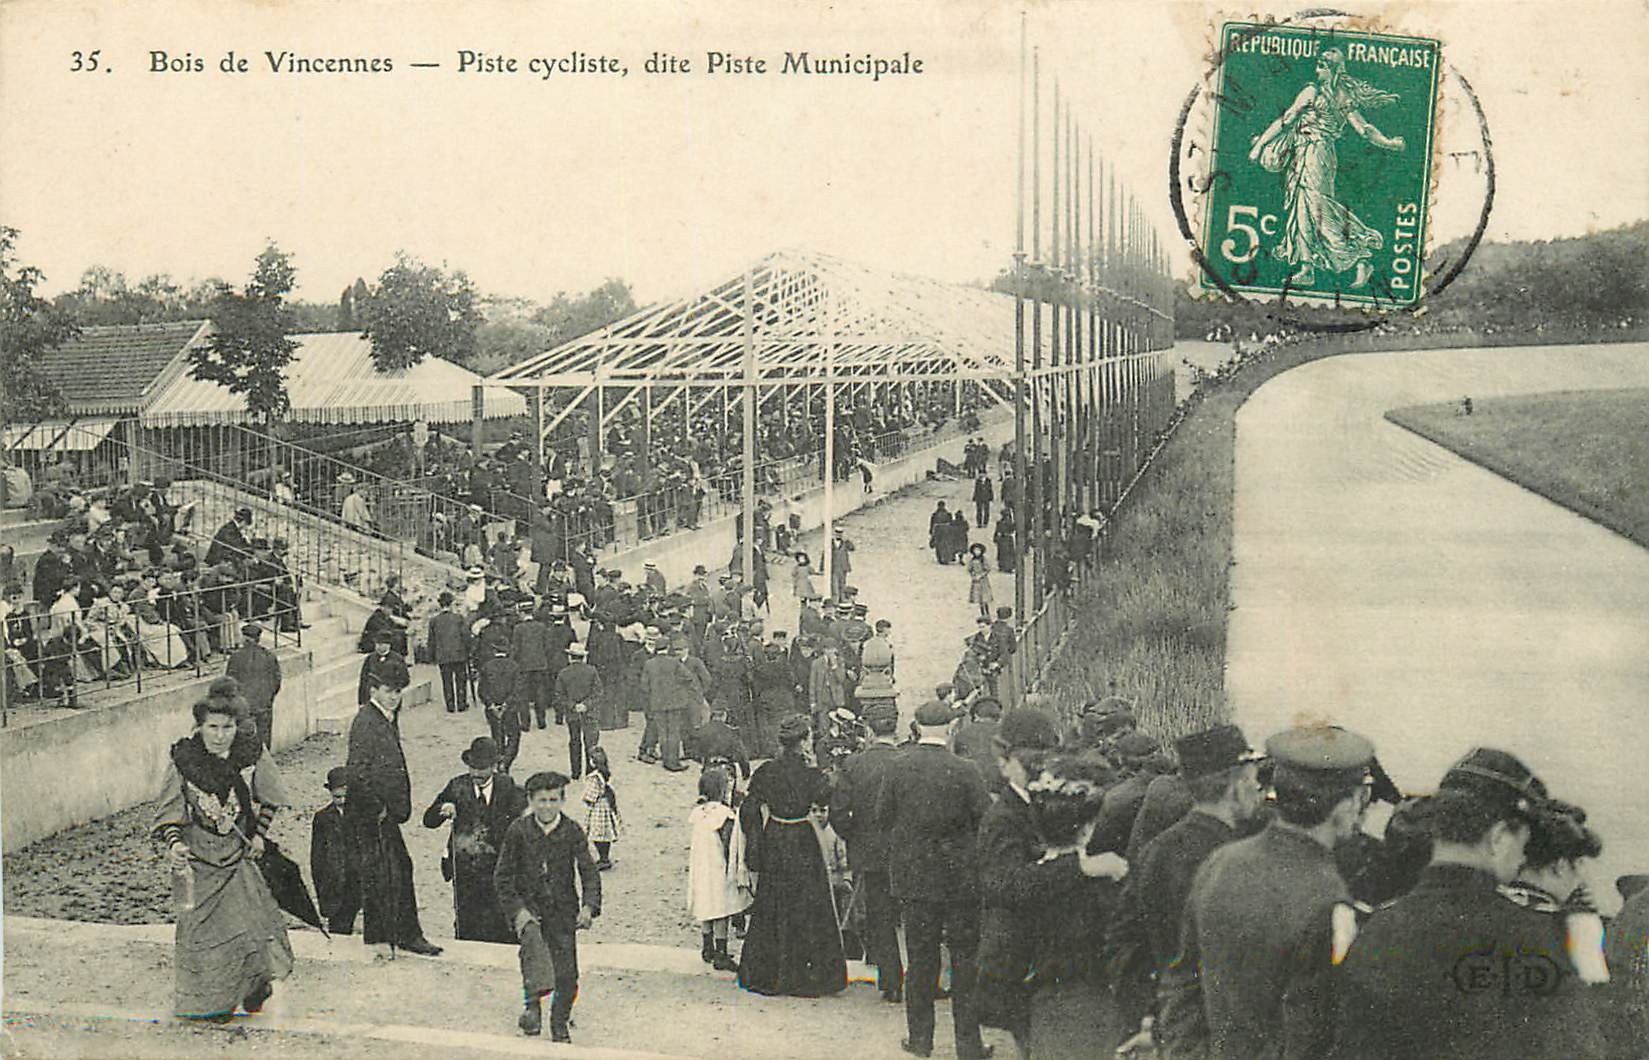 WW SPORTS Cyclisme. Au Bois de Vincennes (94) la Piste Municipale 1911